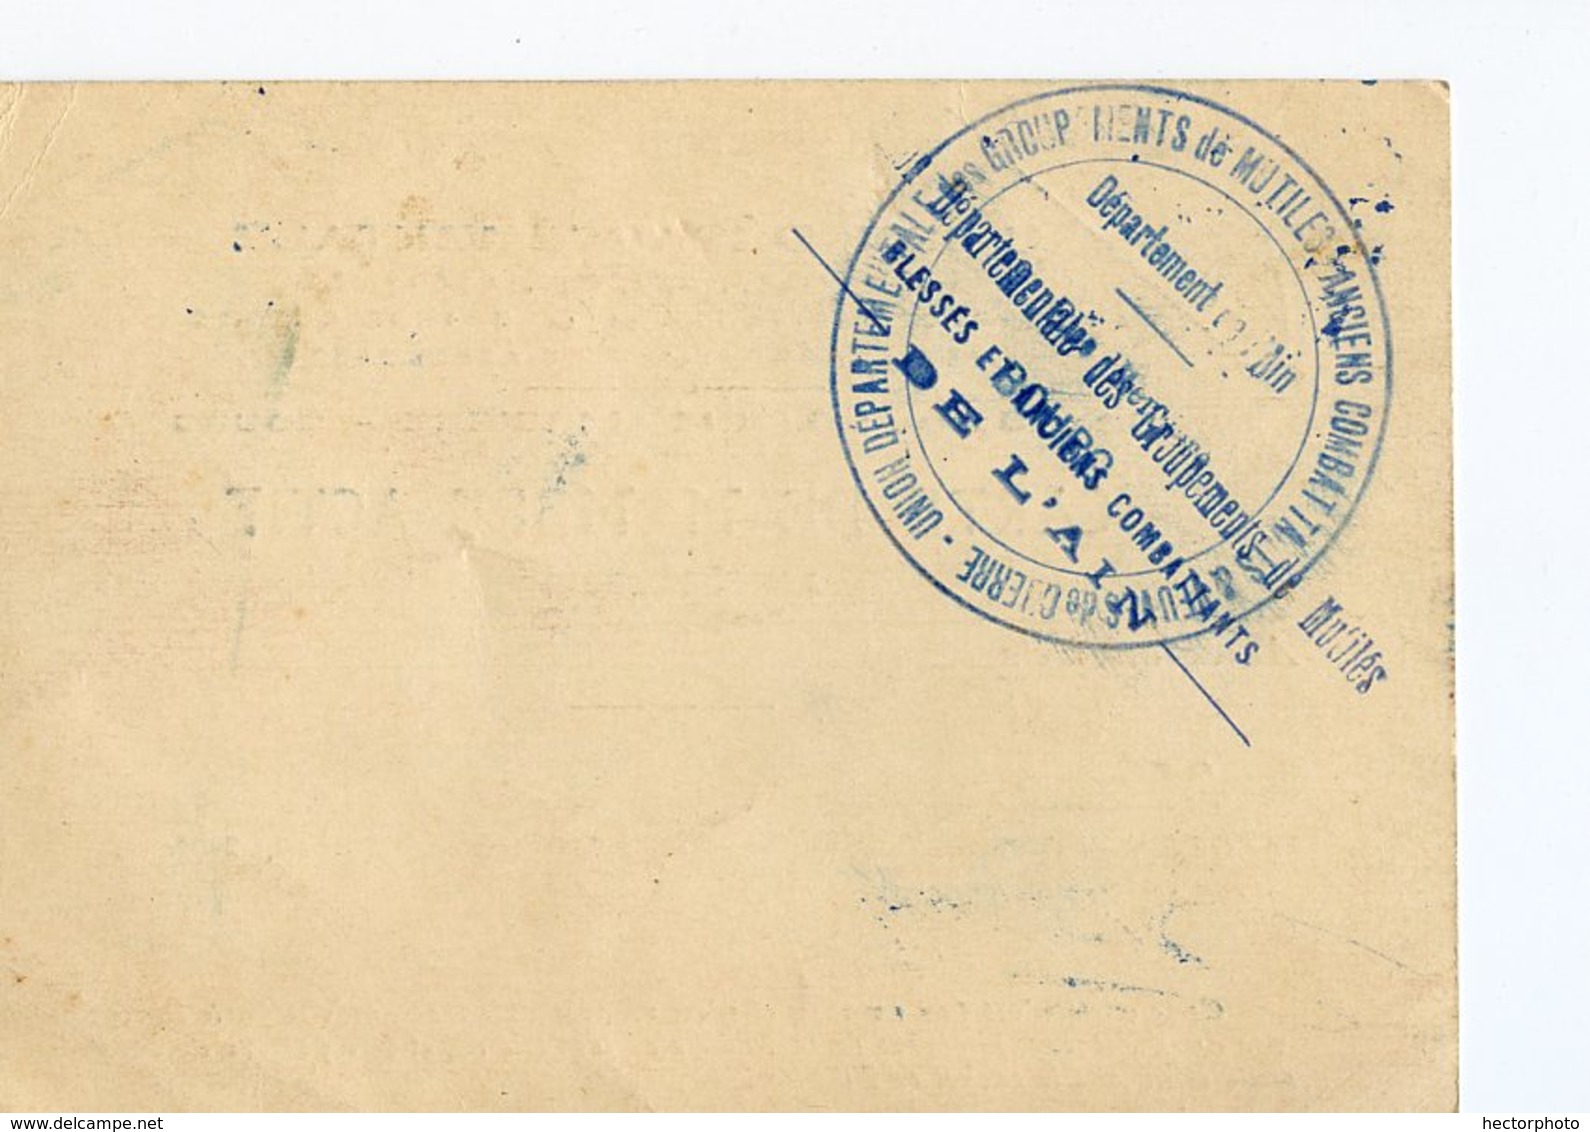 Carte Membre Actif 1922 Union Departementale MUTILE Blessé Ancien Combattant Grande Guerre 14-18 BOURG CHARNAY Jasseron - Unclassified